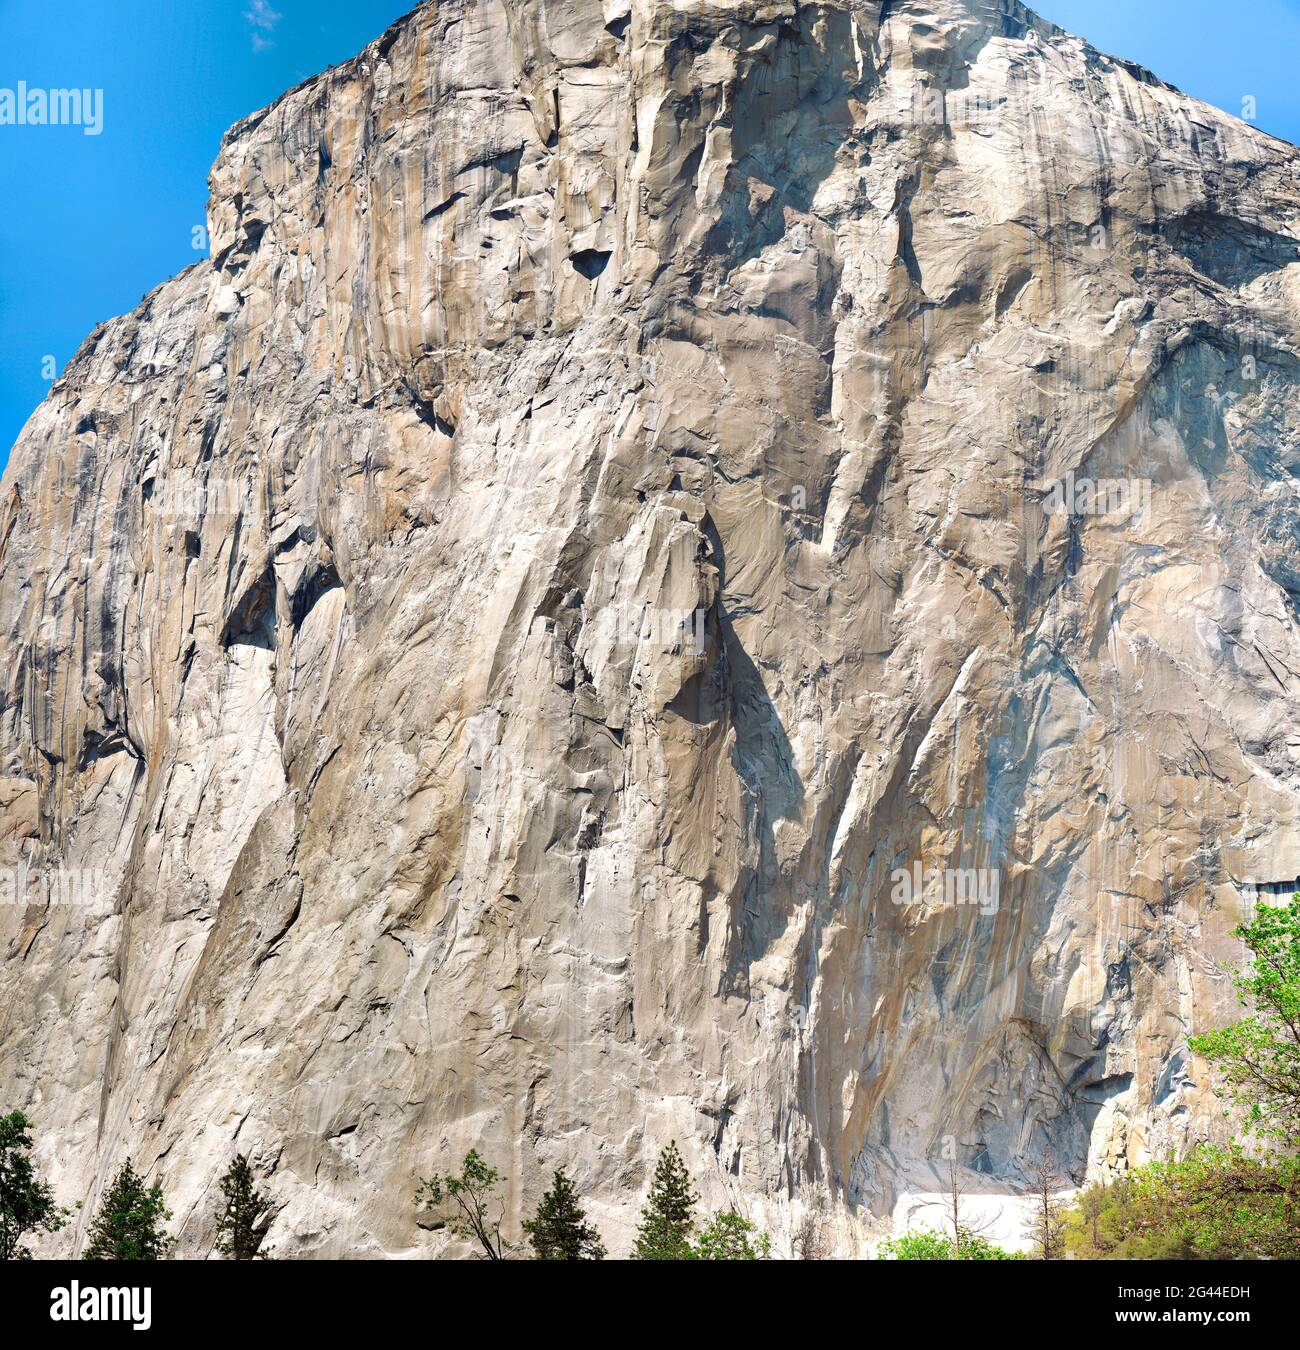 Formación rocosa El Capitan, Valle Yosemite, Parque Nacional Yosemite, California, Estados Unidos Foto de stock